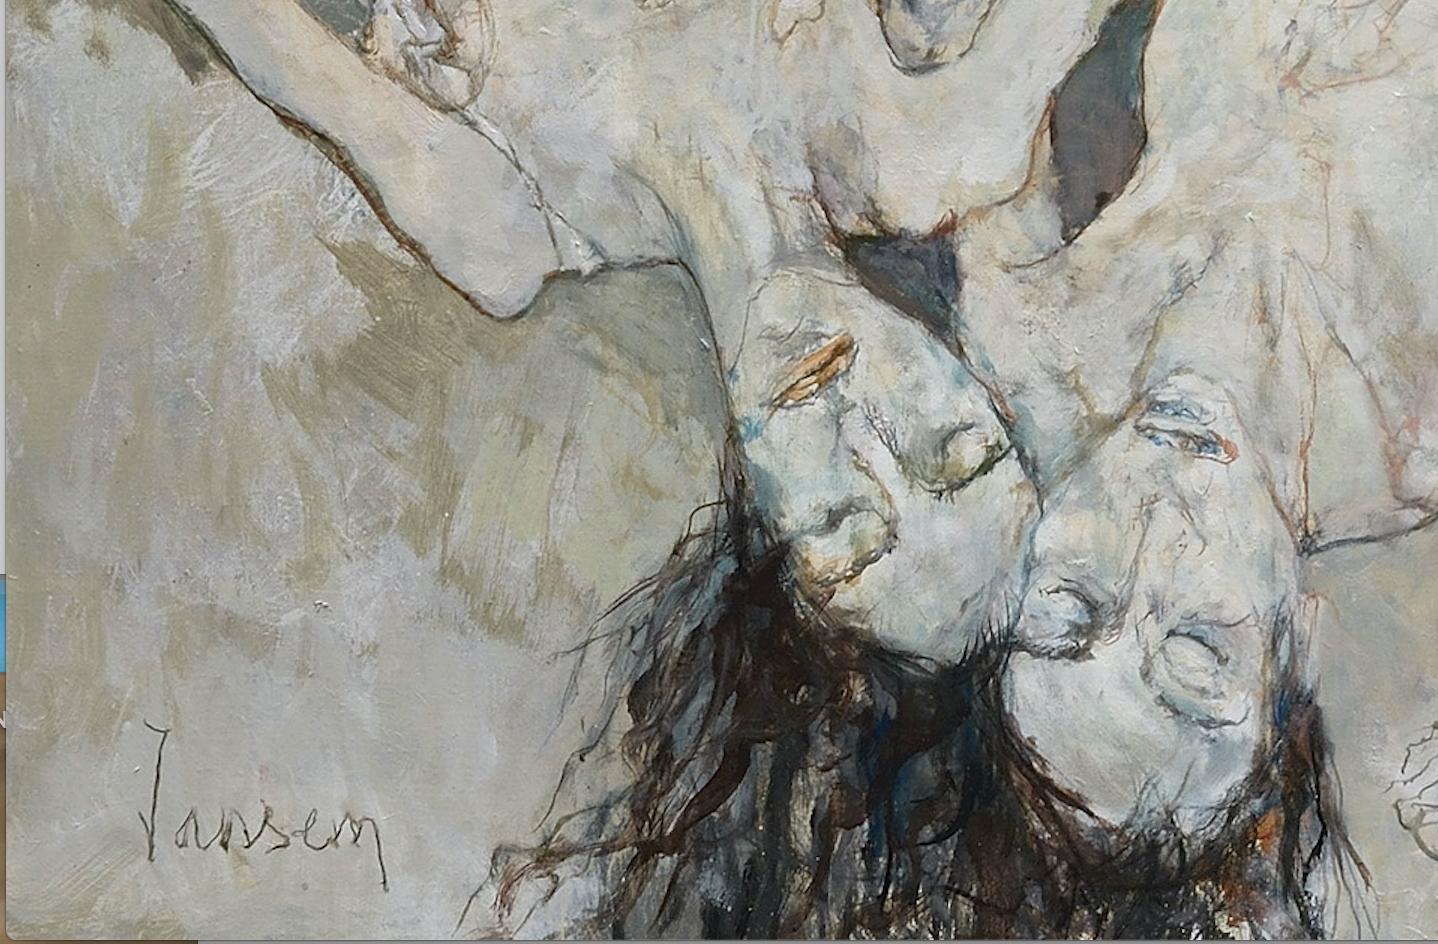 Le triomphe de la mort, 2000, oil on canvas by Jean Jansem For Sale 2